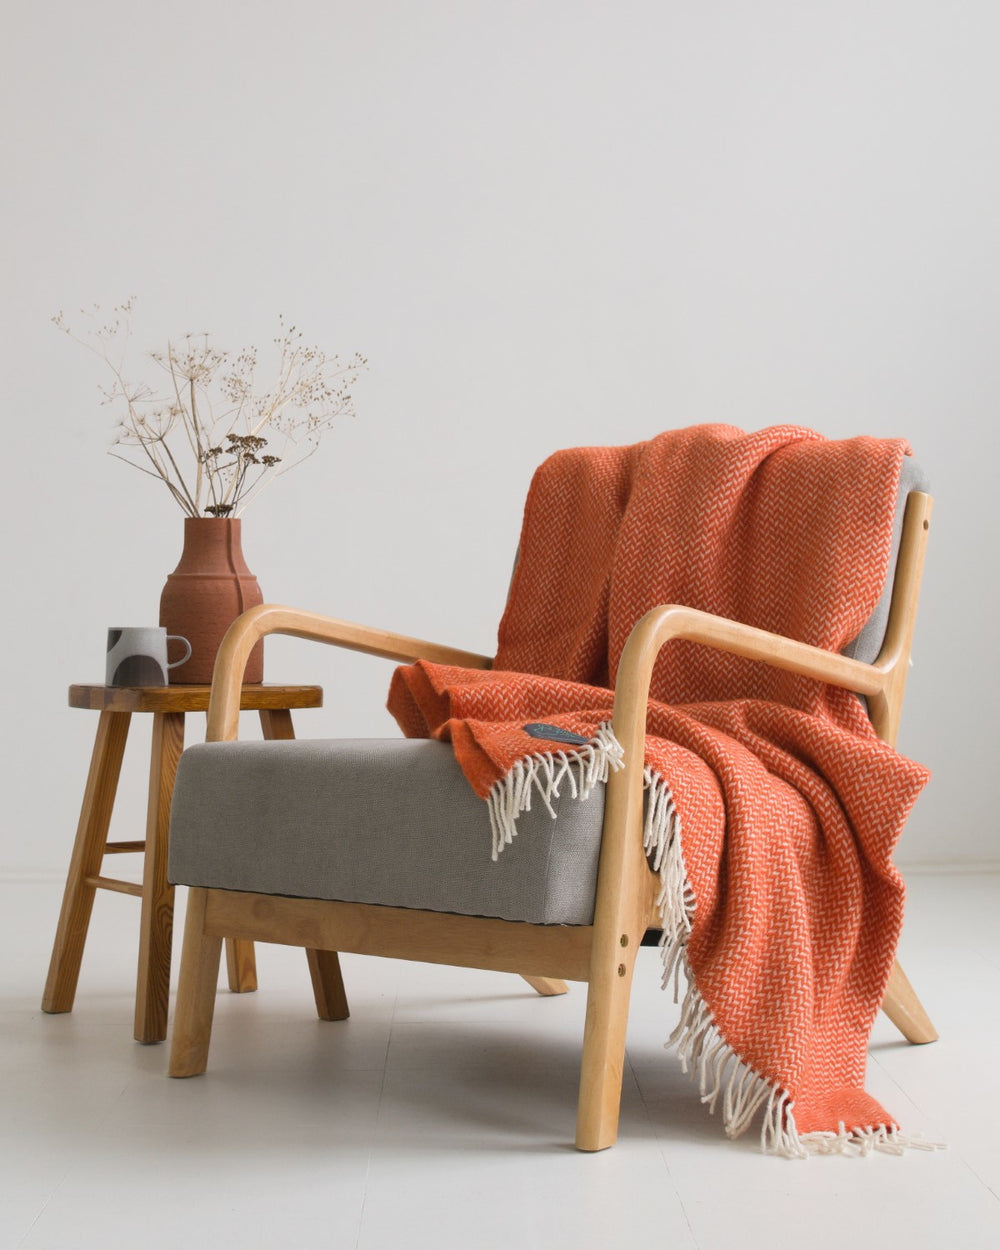 Large orange herringbone wool blanket draped over a lounge chair